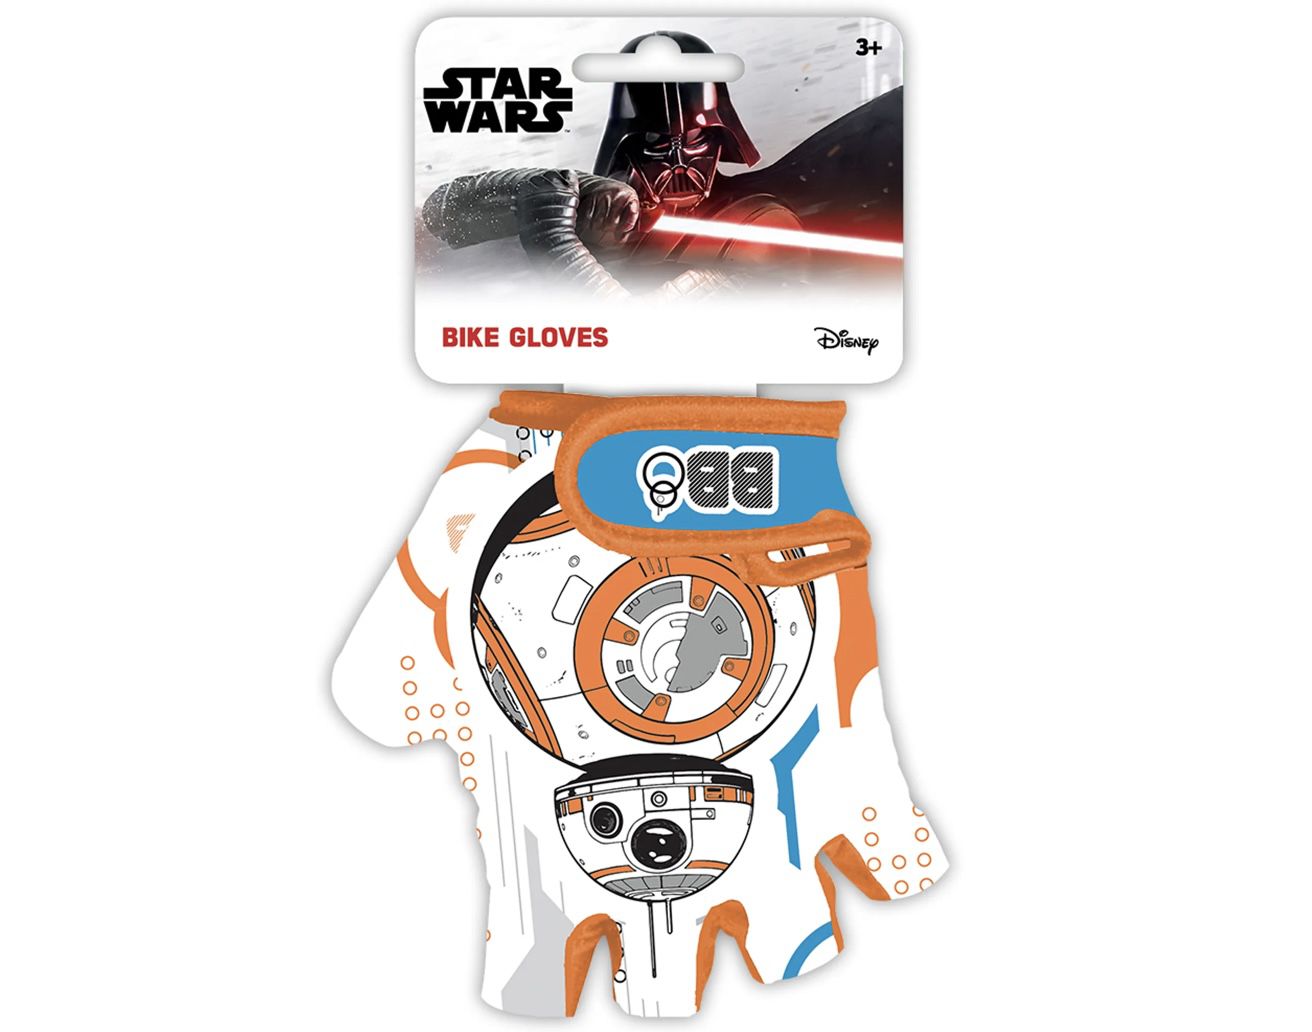 Star Wars Jungen Handschuhe zum Roller  oder Fahrradfahren für 4,49€ (statt 8€)   Prime